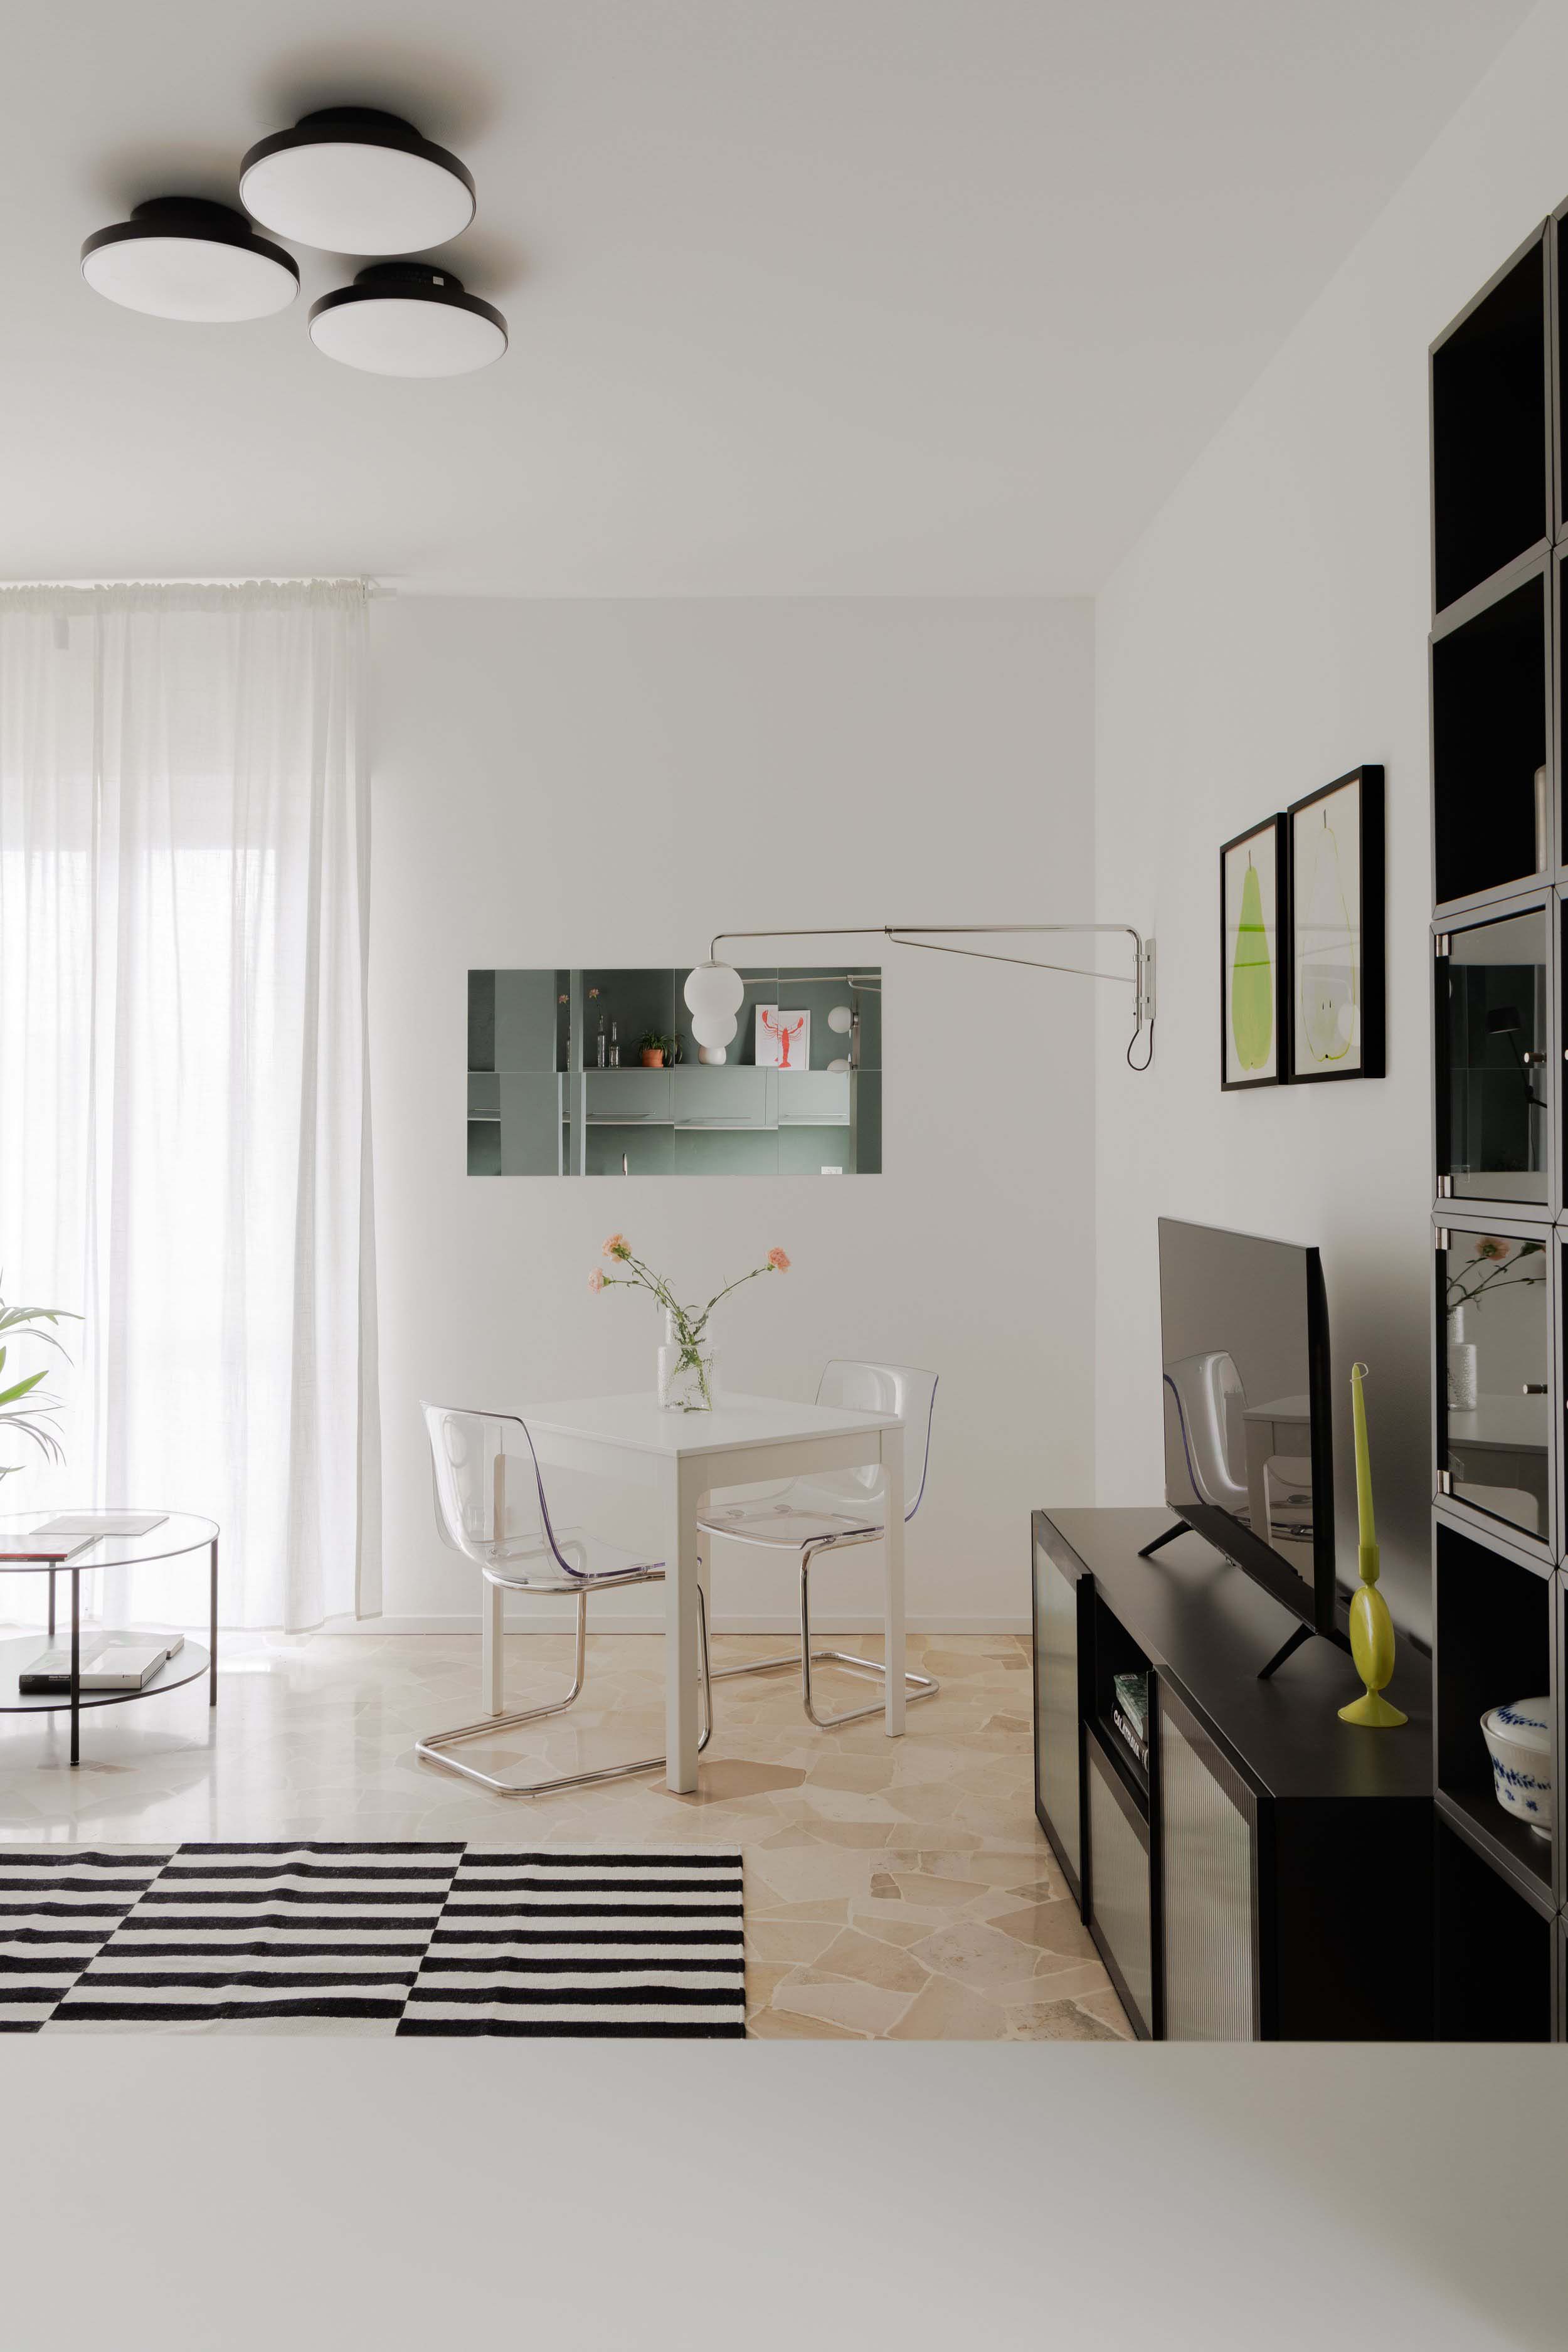 住宅设计,公寓设计,小户型设计,50㎡公寓设计,公寓设计案例,公寓设计方案,Be.Arch Hub,米兰,橄榄色